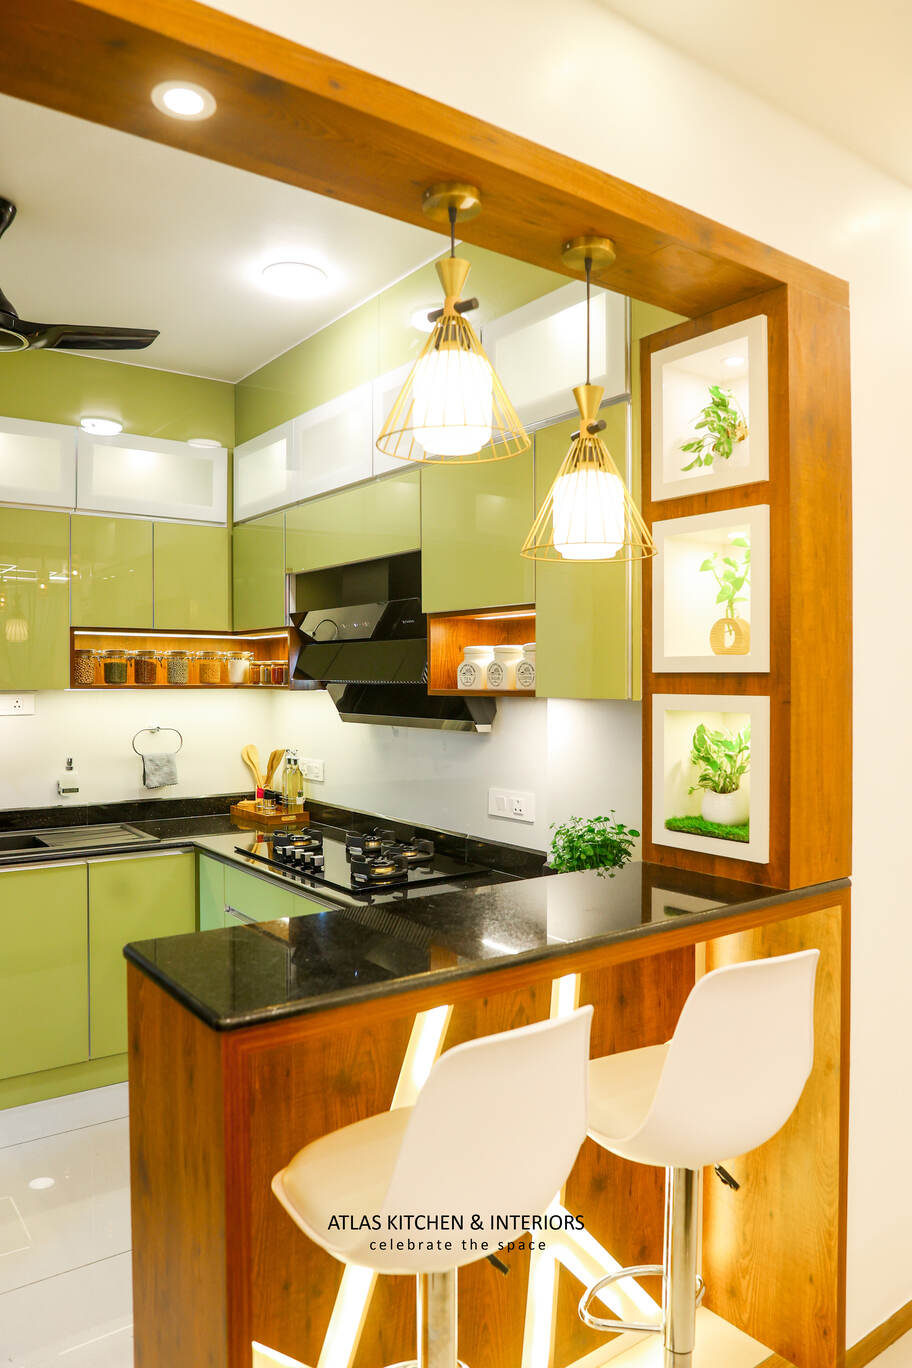 open kitchen design